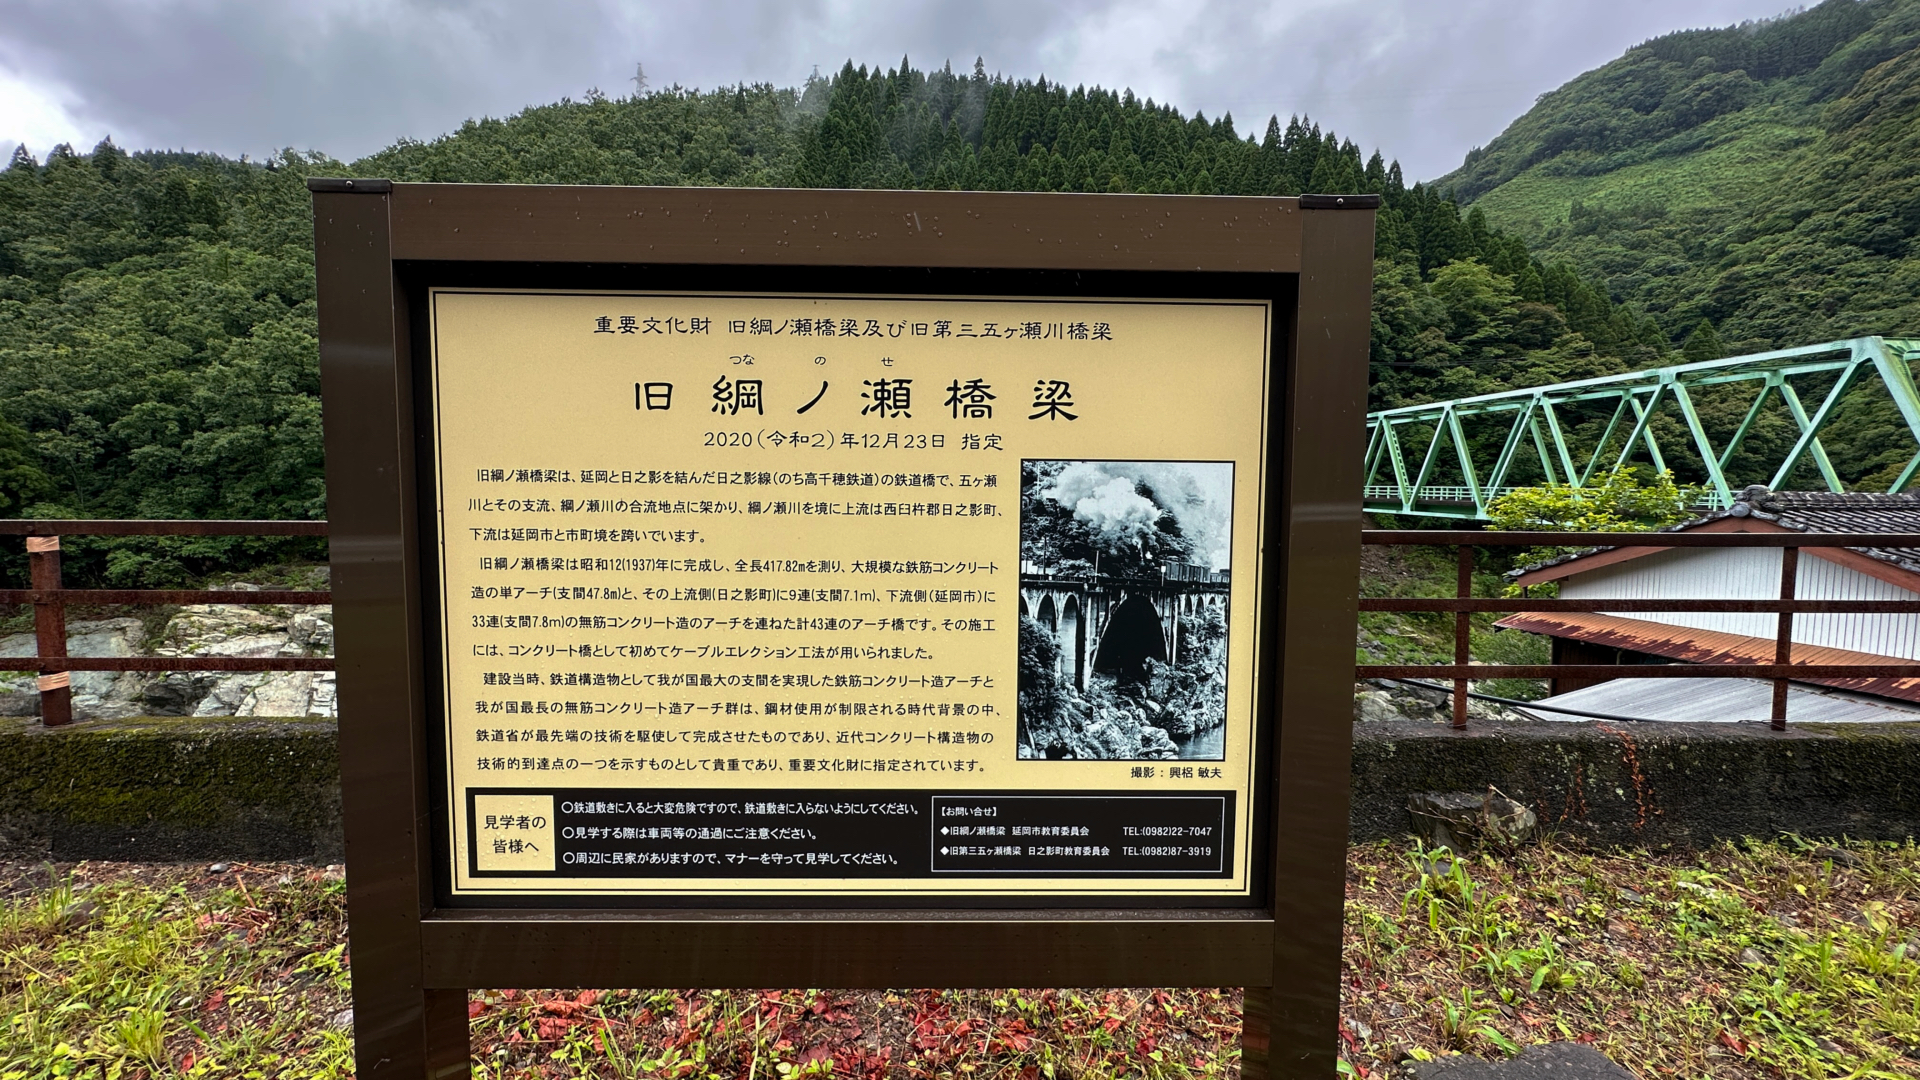 Tafeln informieren über die alten Eisenbahnbrücken, die als wichtiges Kulturgut eingetragen sind.